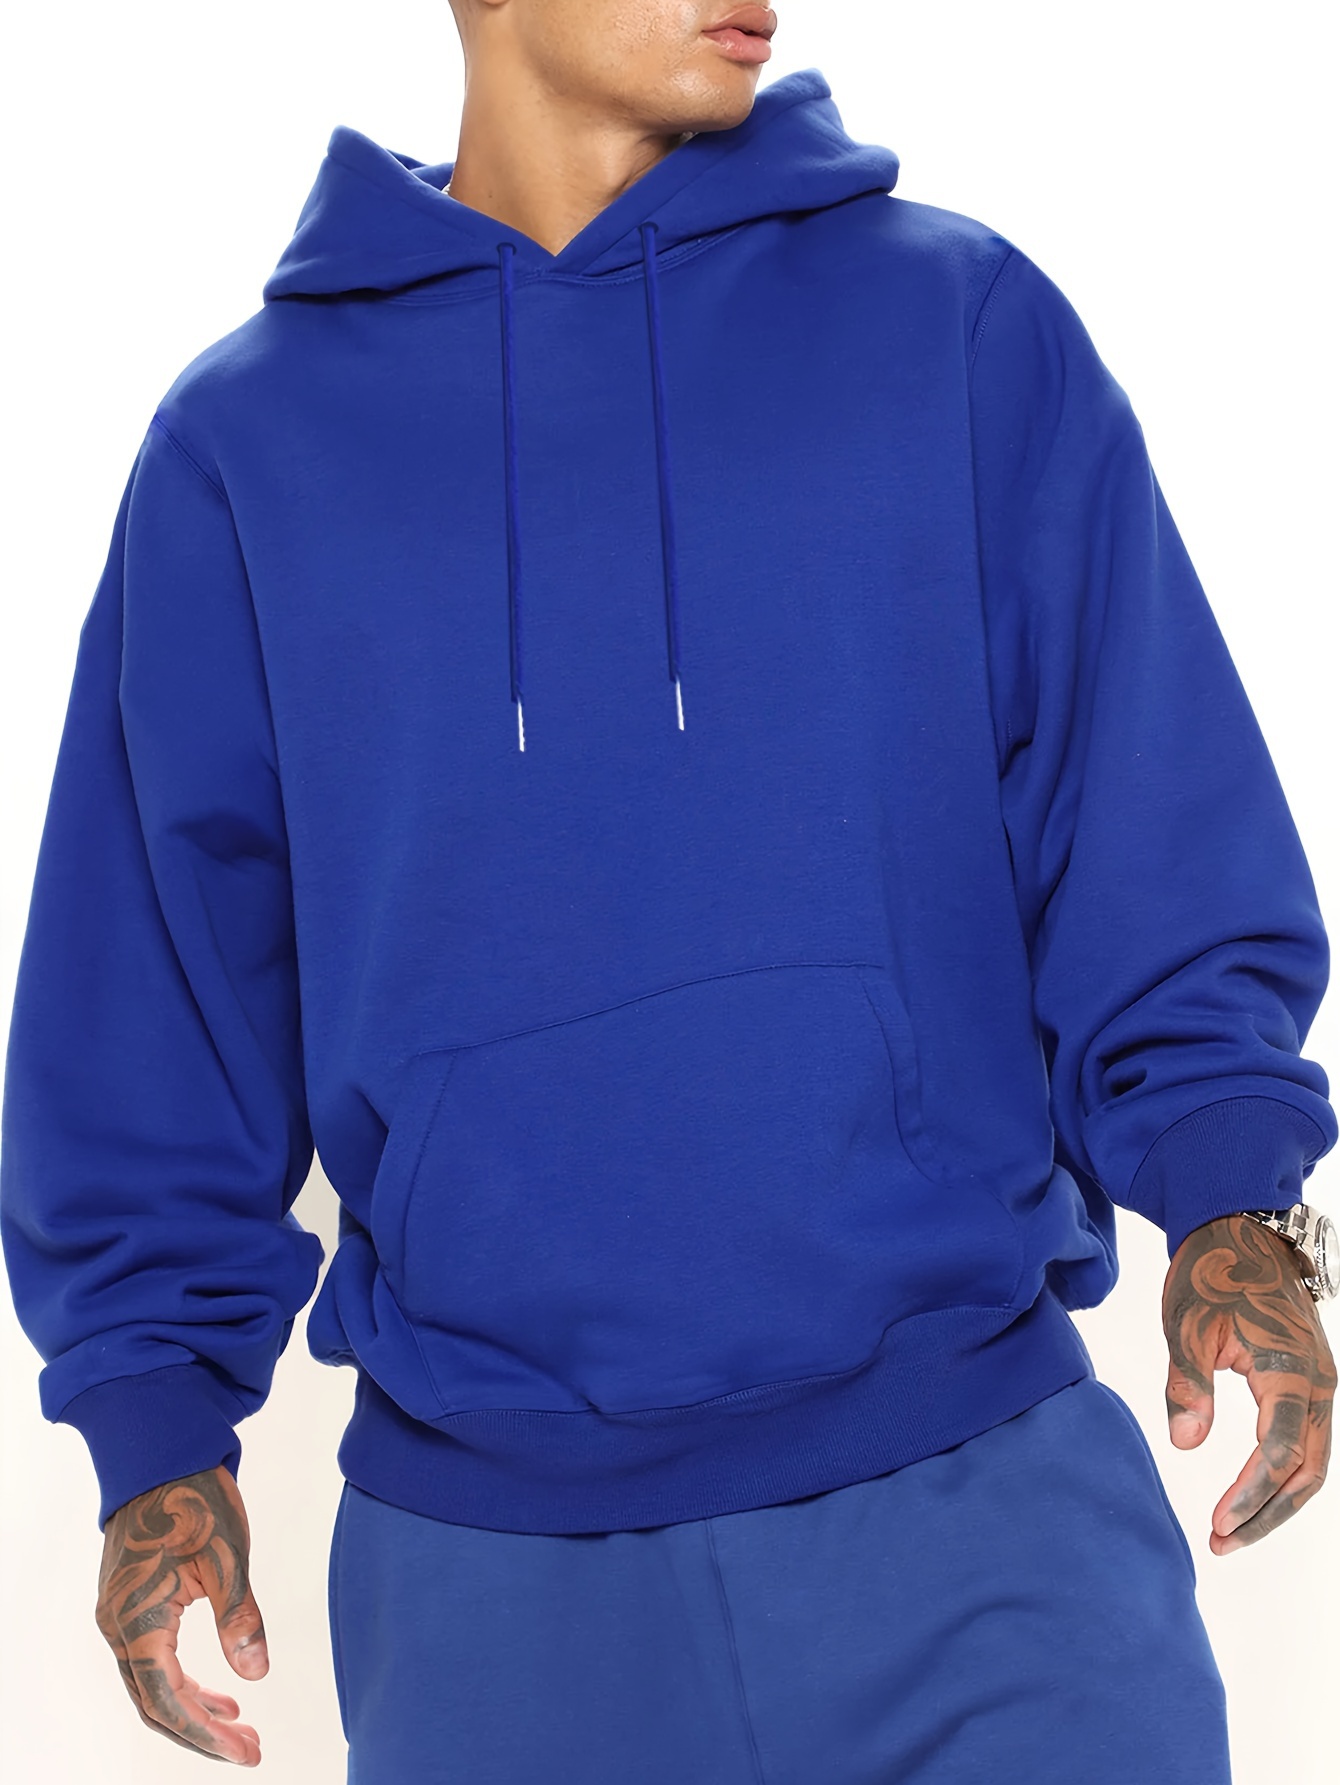 Supreme Mens Sweater Adult Medium Blue Gradient Hooded Sweatshirt Long  Sleeve